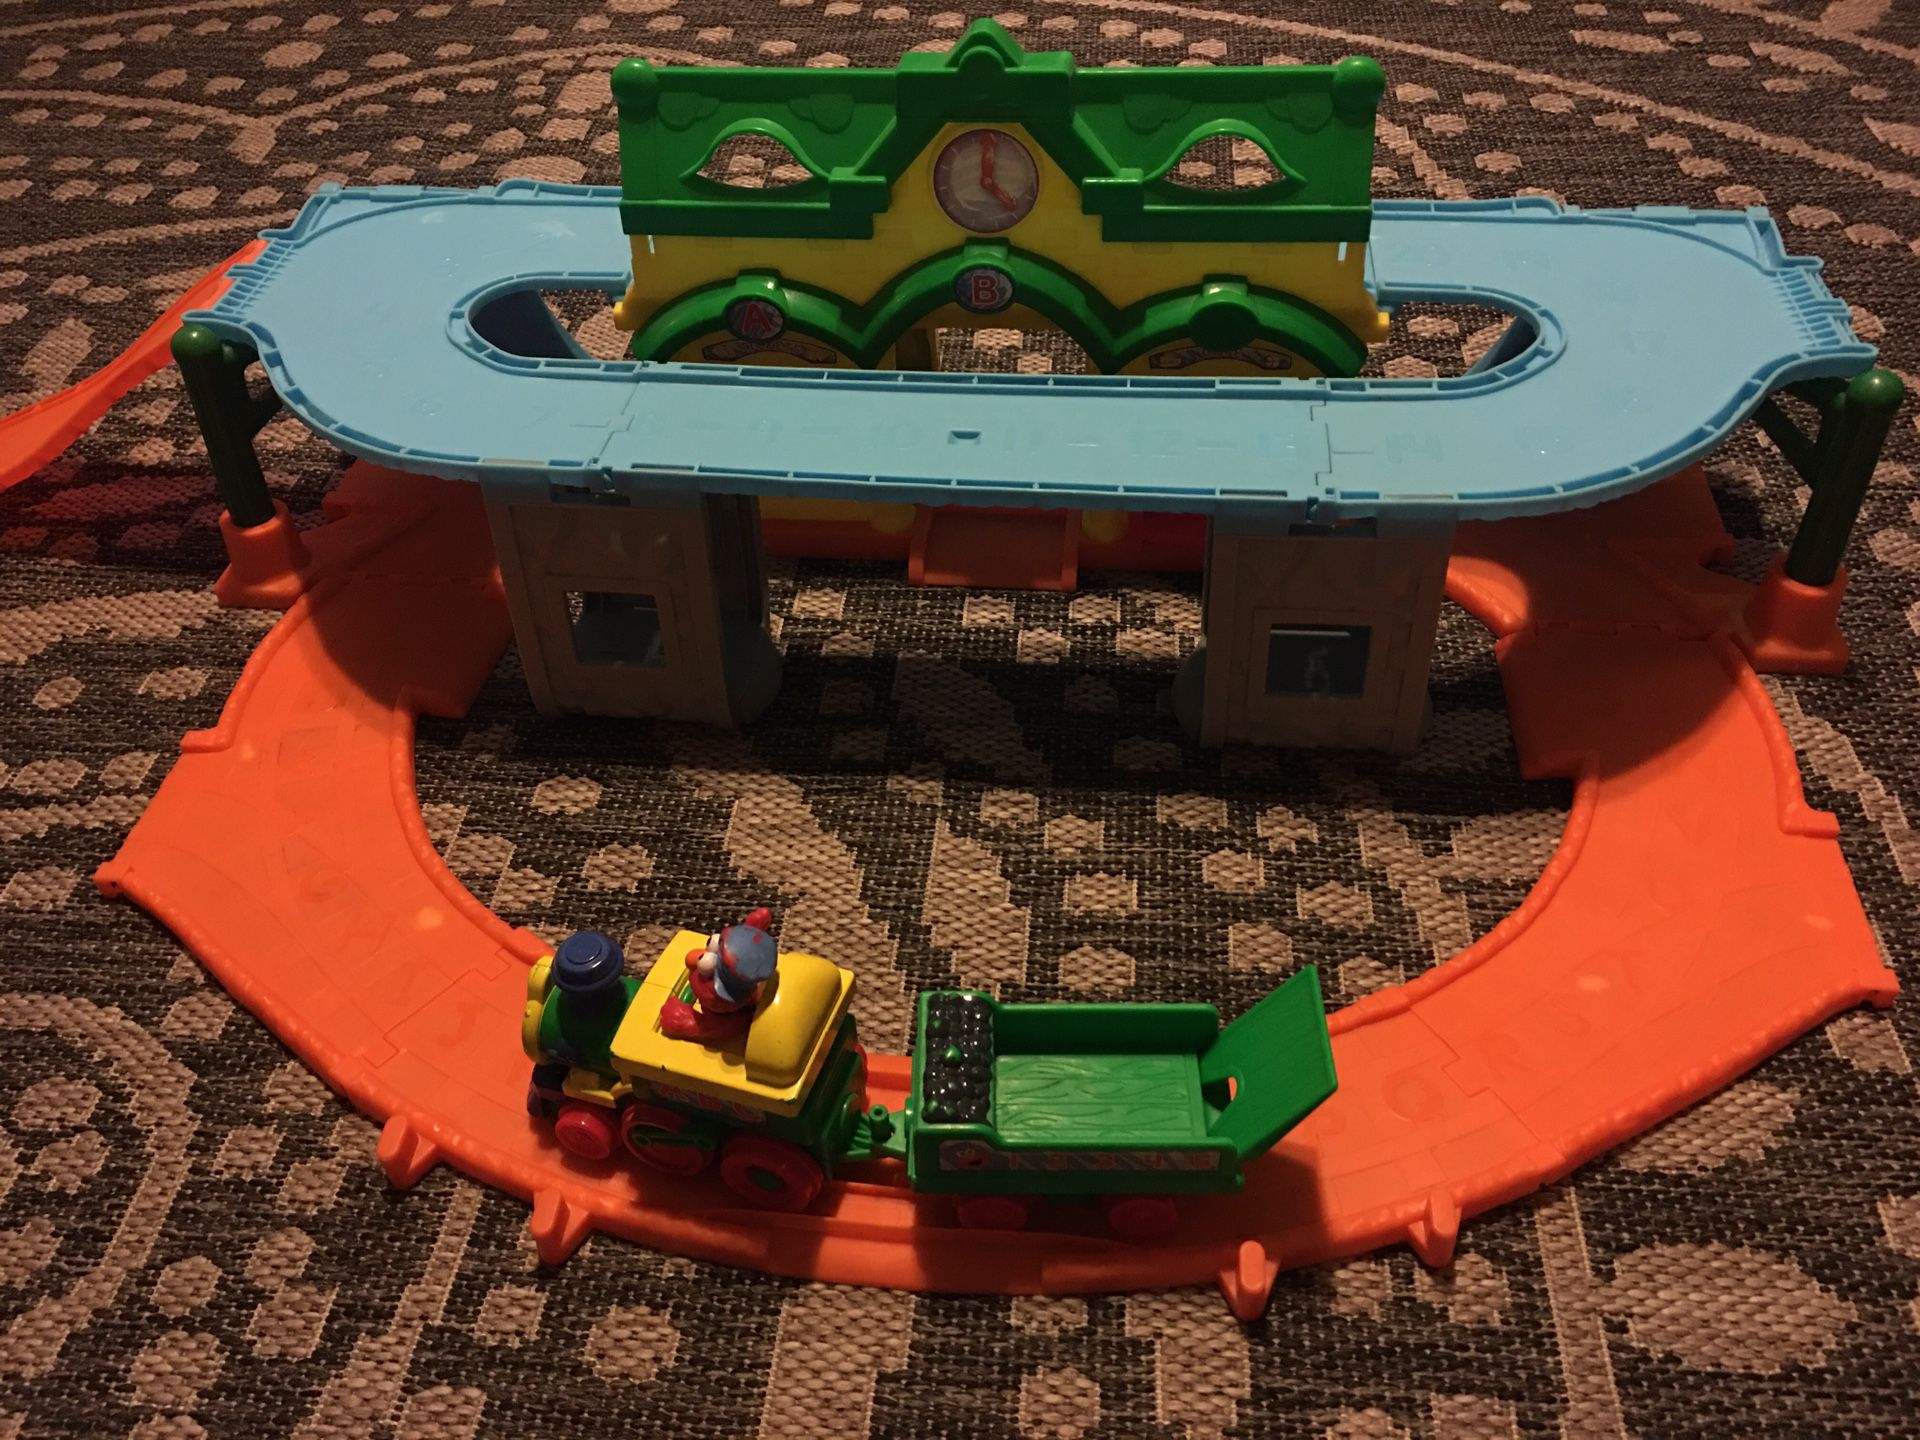 Free Elmo train station play set